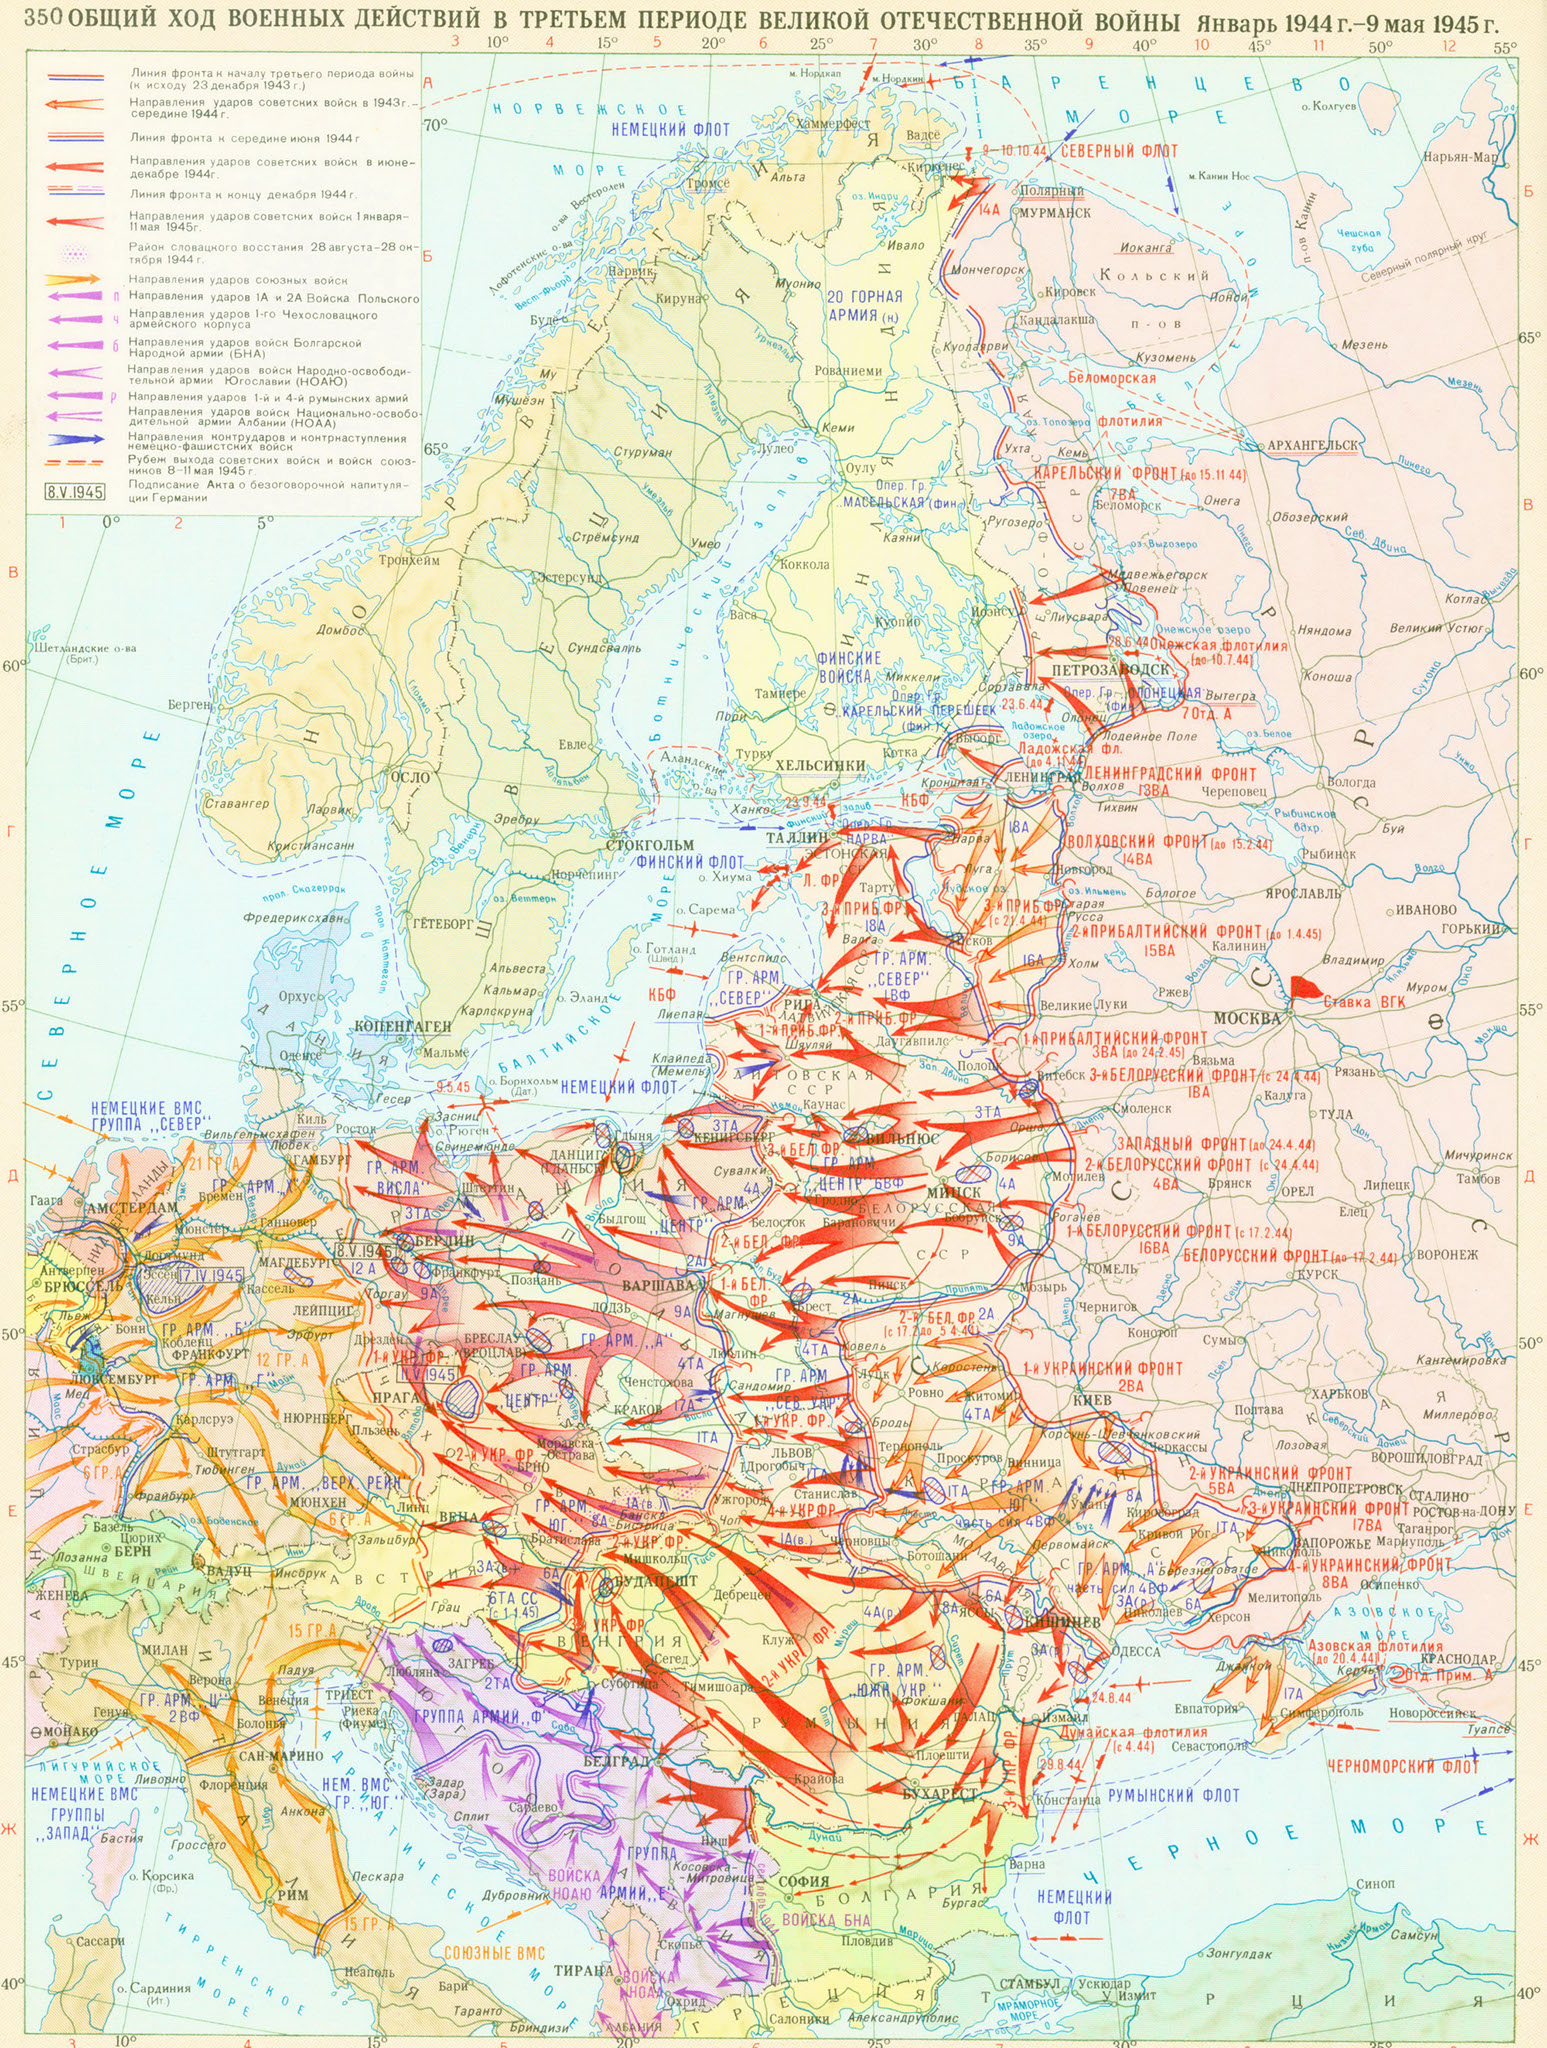 Великая отечественная война контурная карта 10 класс